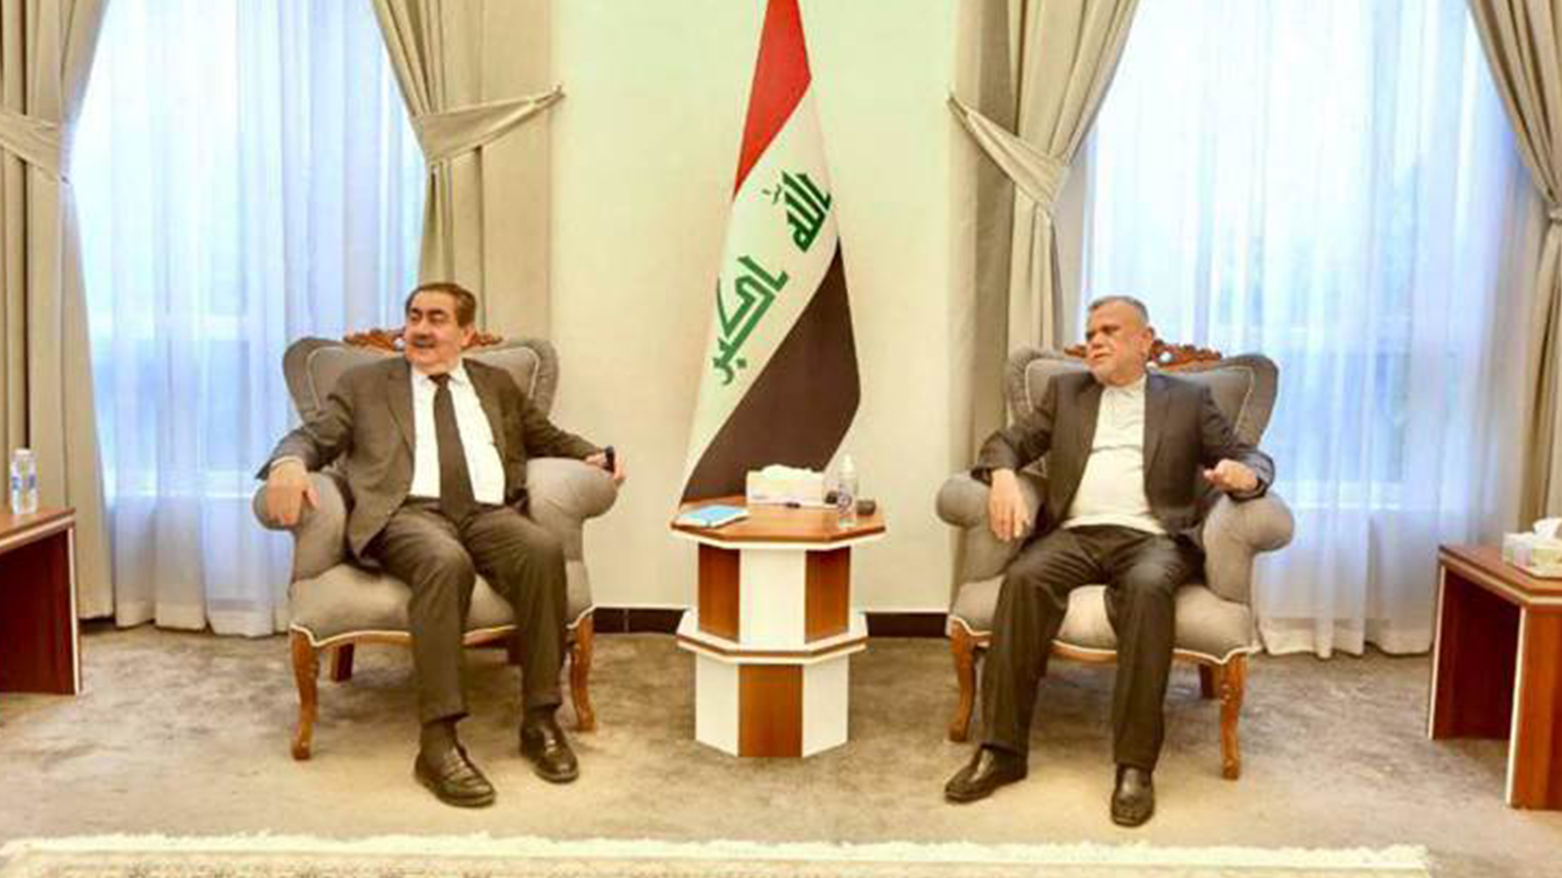 هیئت مشترک پارت دموکرات کوردستان و اتحادیه میهنی کوردستان با هادی عامری رئیس ائتلاف فتح دیدار کردند